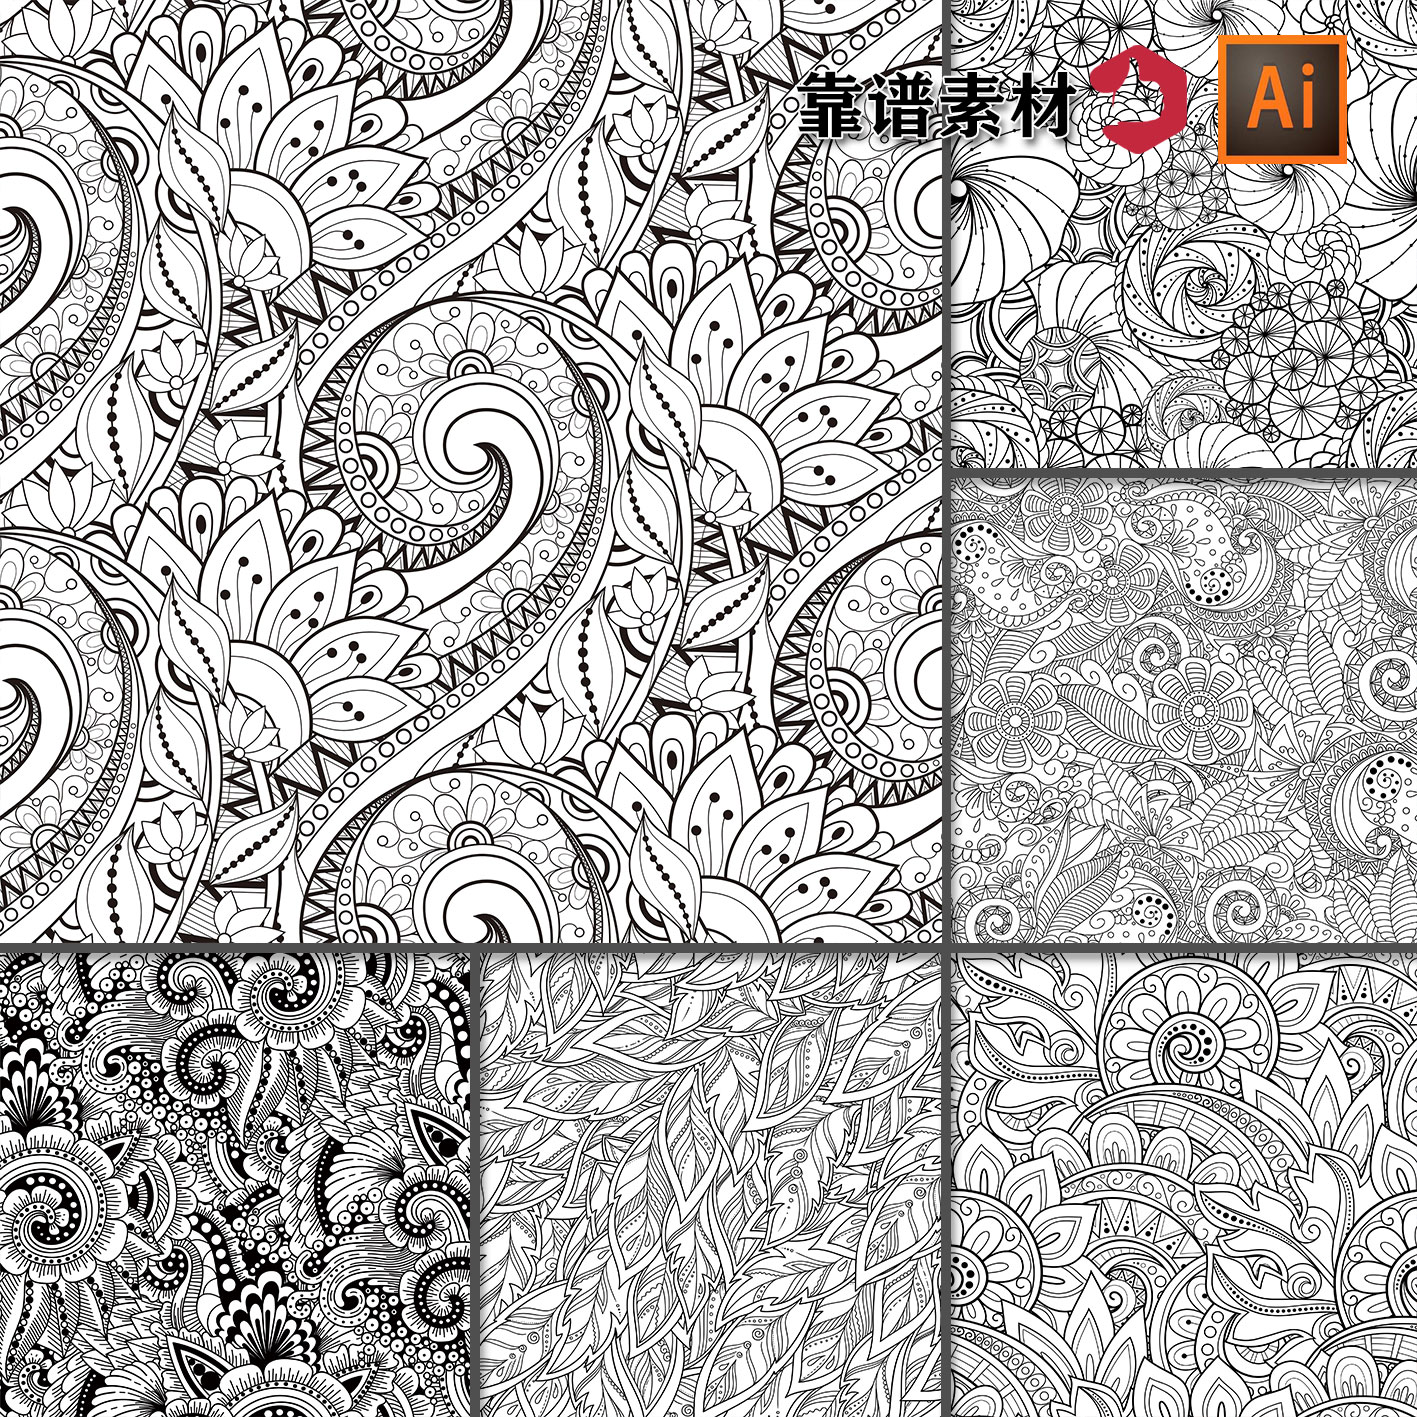 线描线条黑白植物花纹服饰墙纸循环拼接印花图案AI矢量设计素材